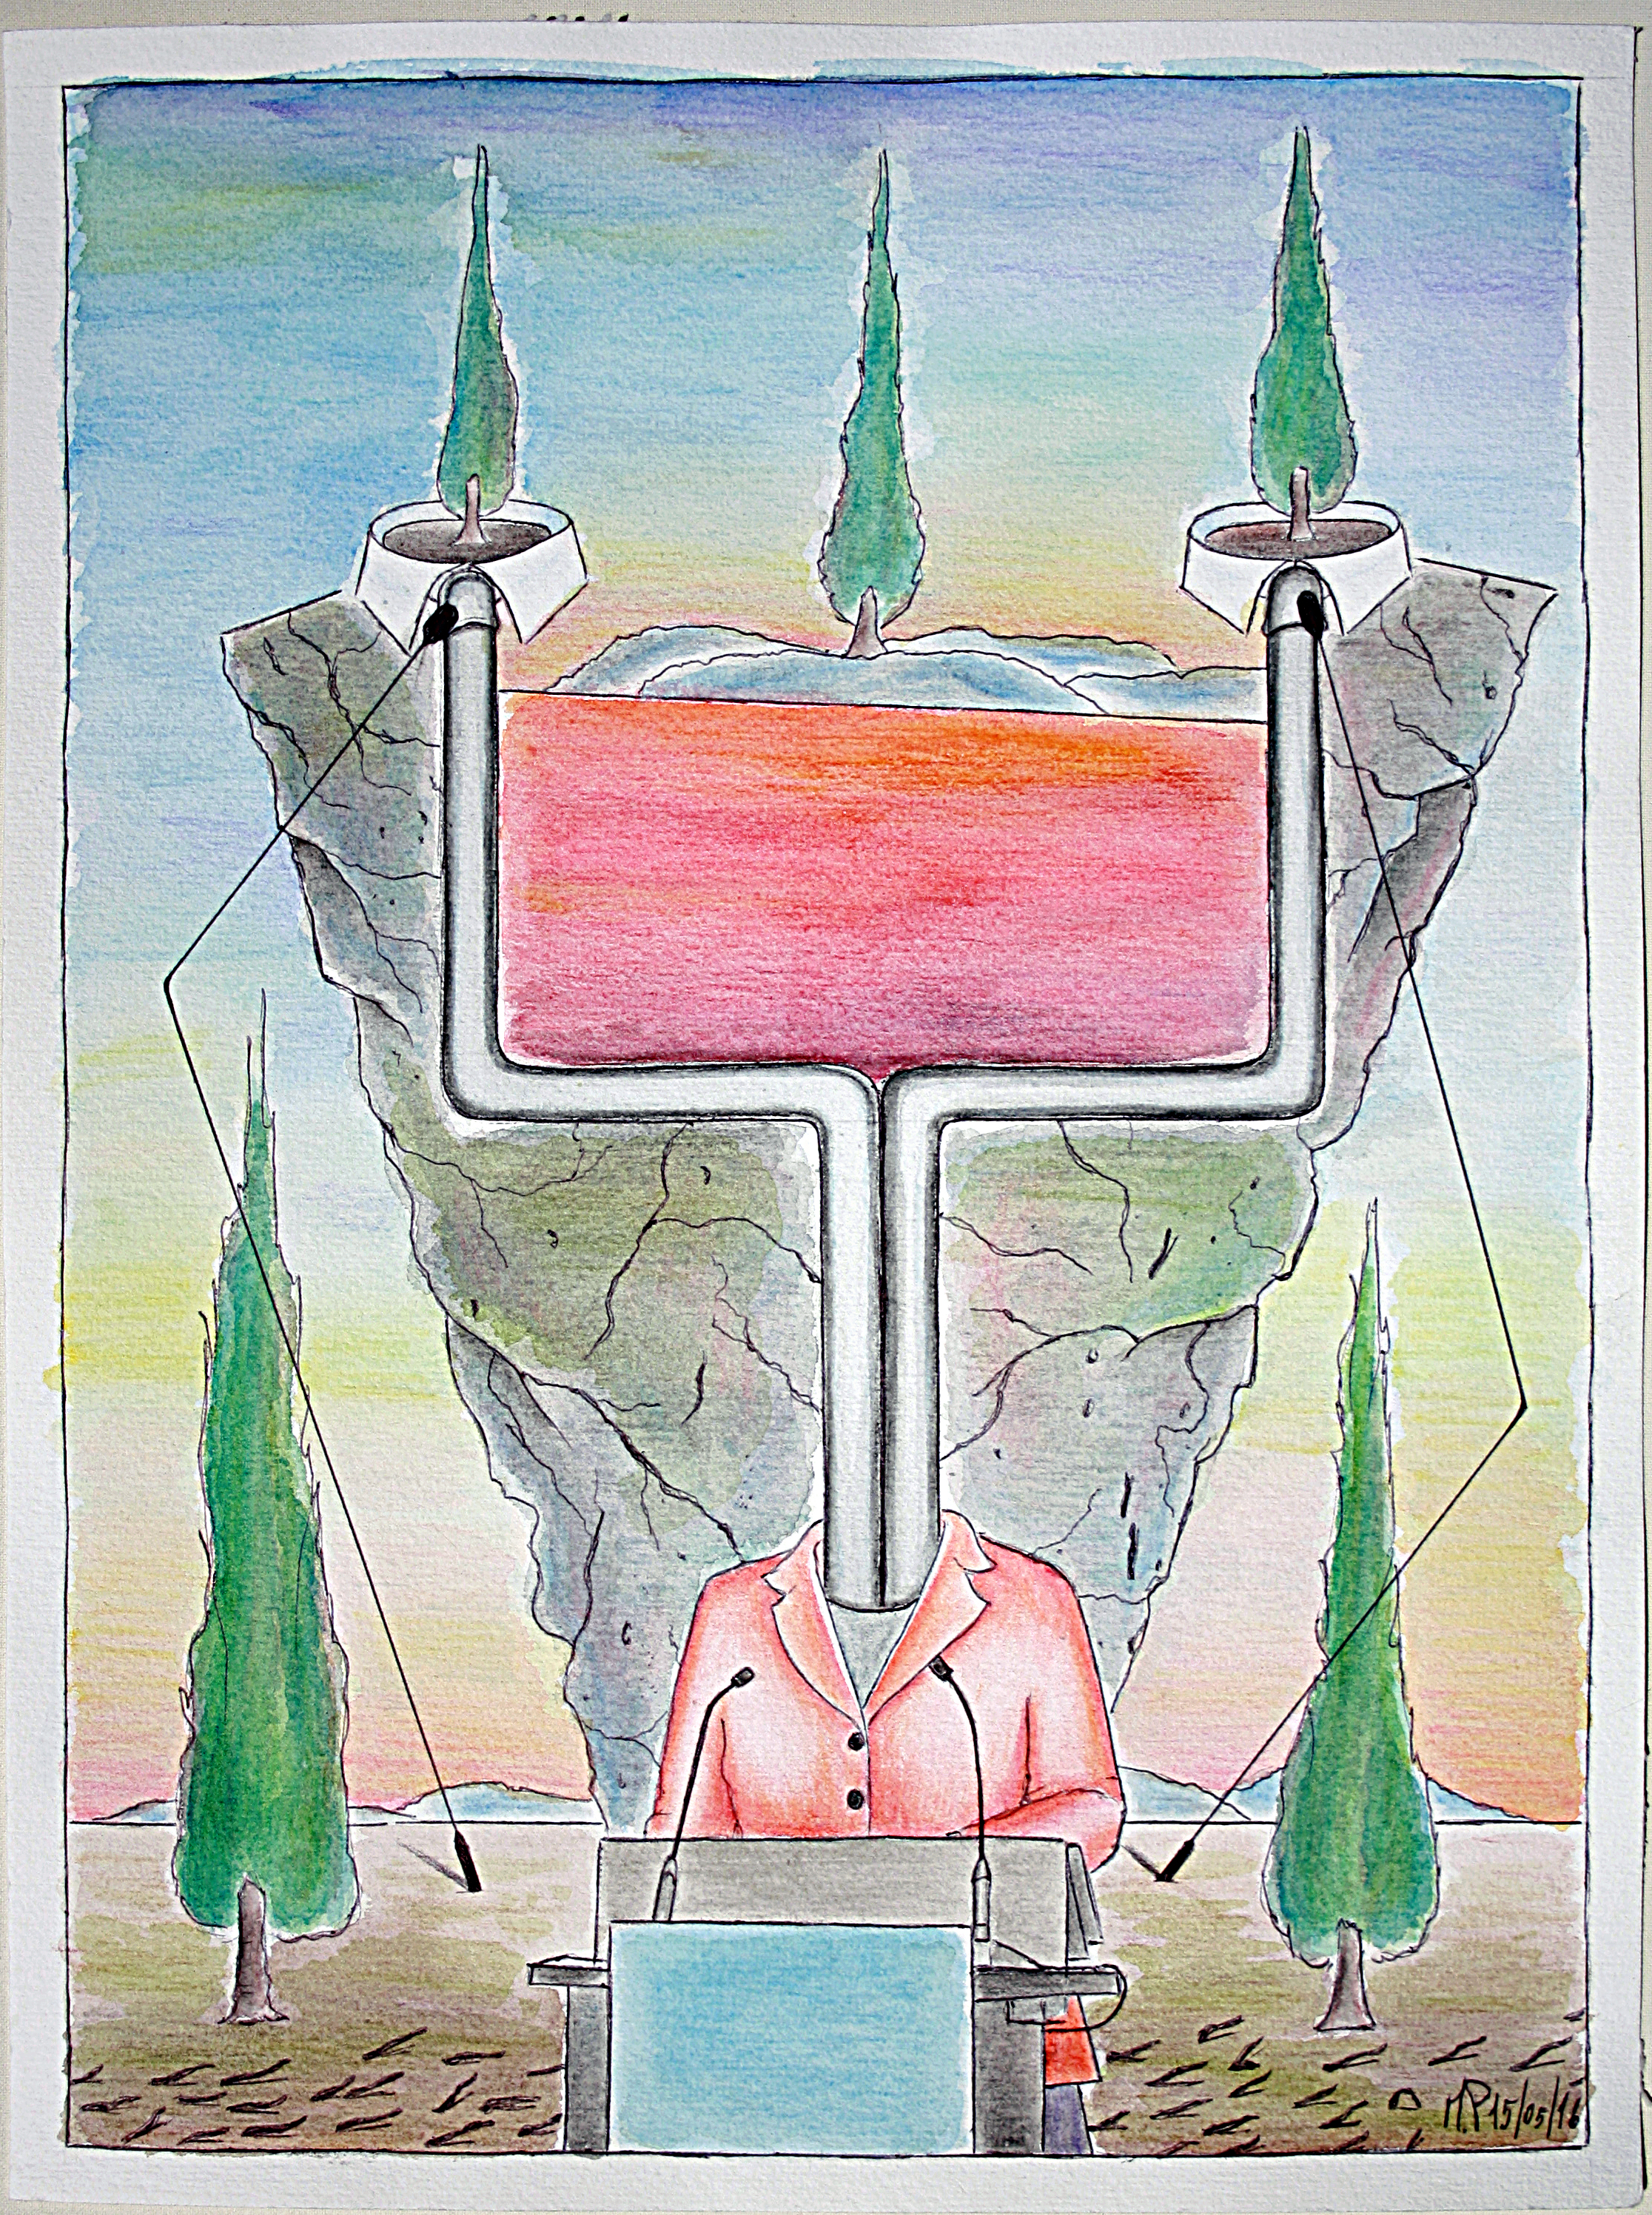 Europa in Ade (Europe Ade), 15/05/2016, disegno a penna e acquerello (pen drawing and watercolor), cm 30x40, Pasquale Mastrogiacomo, Acerno (SA).